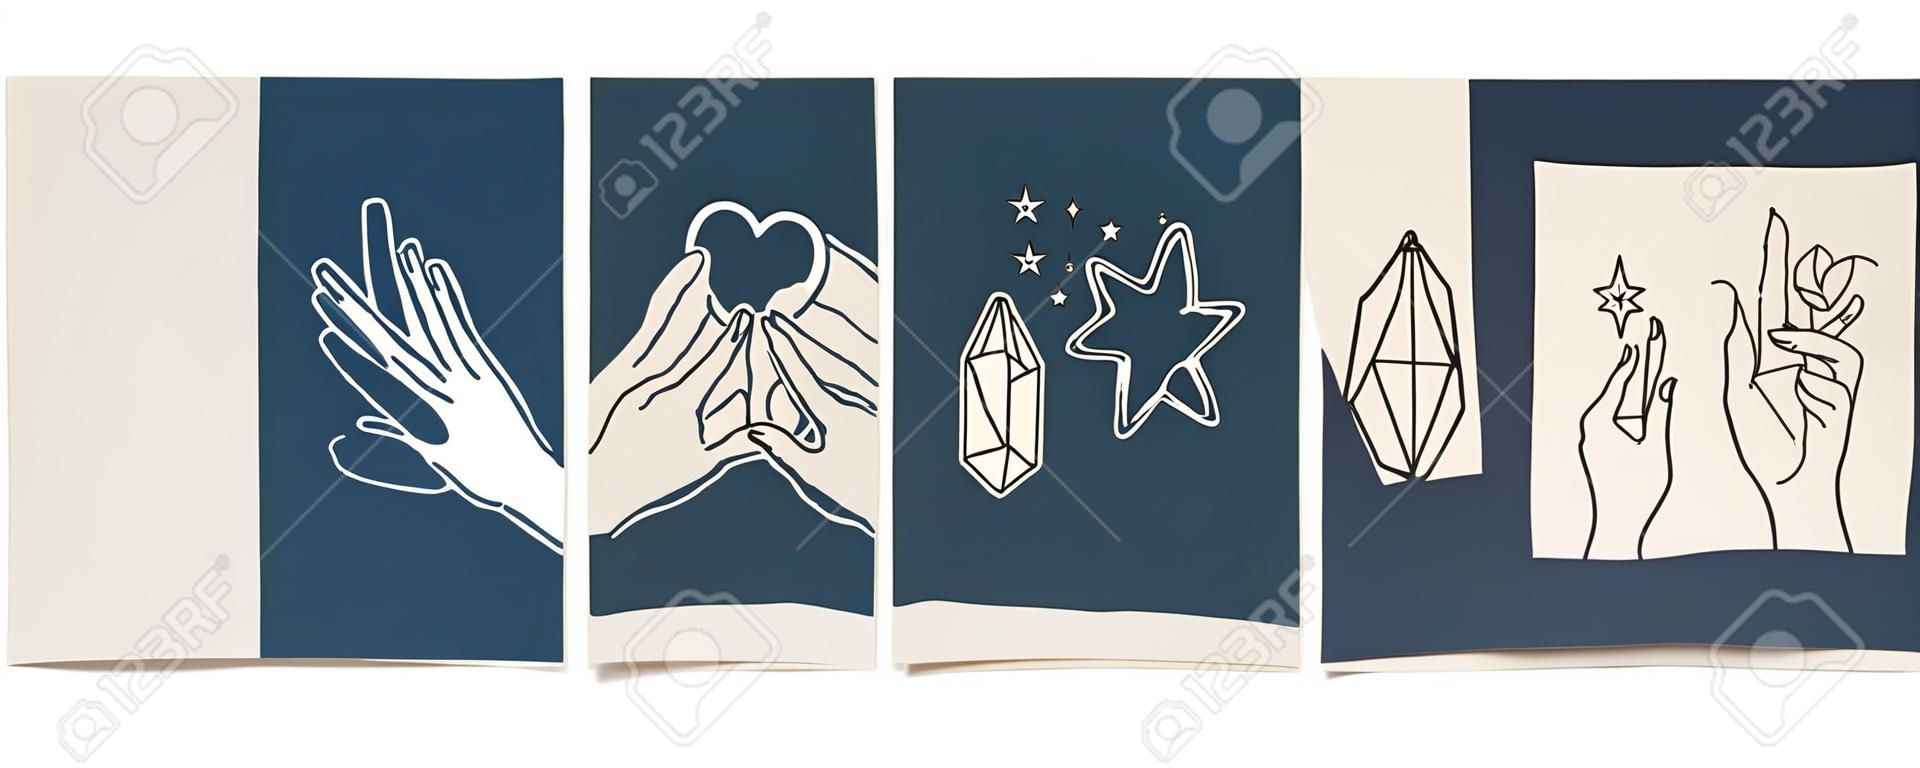 Collection de fond chic sertie de main, cristal, lune, étoile, coeur. Illustration vectorielle modifiable pour site Web, invitation, carte postale et autocollant